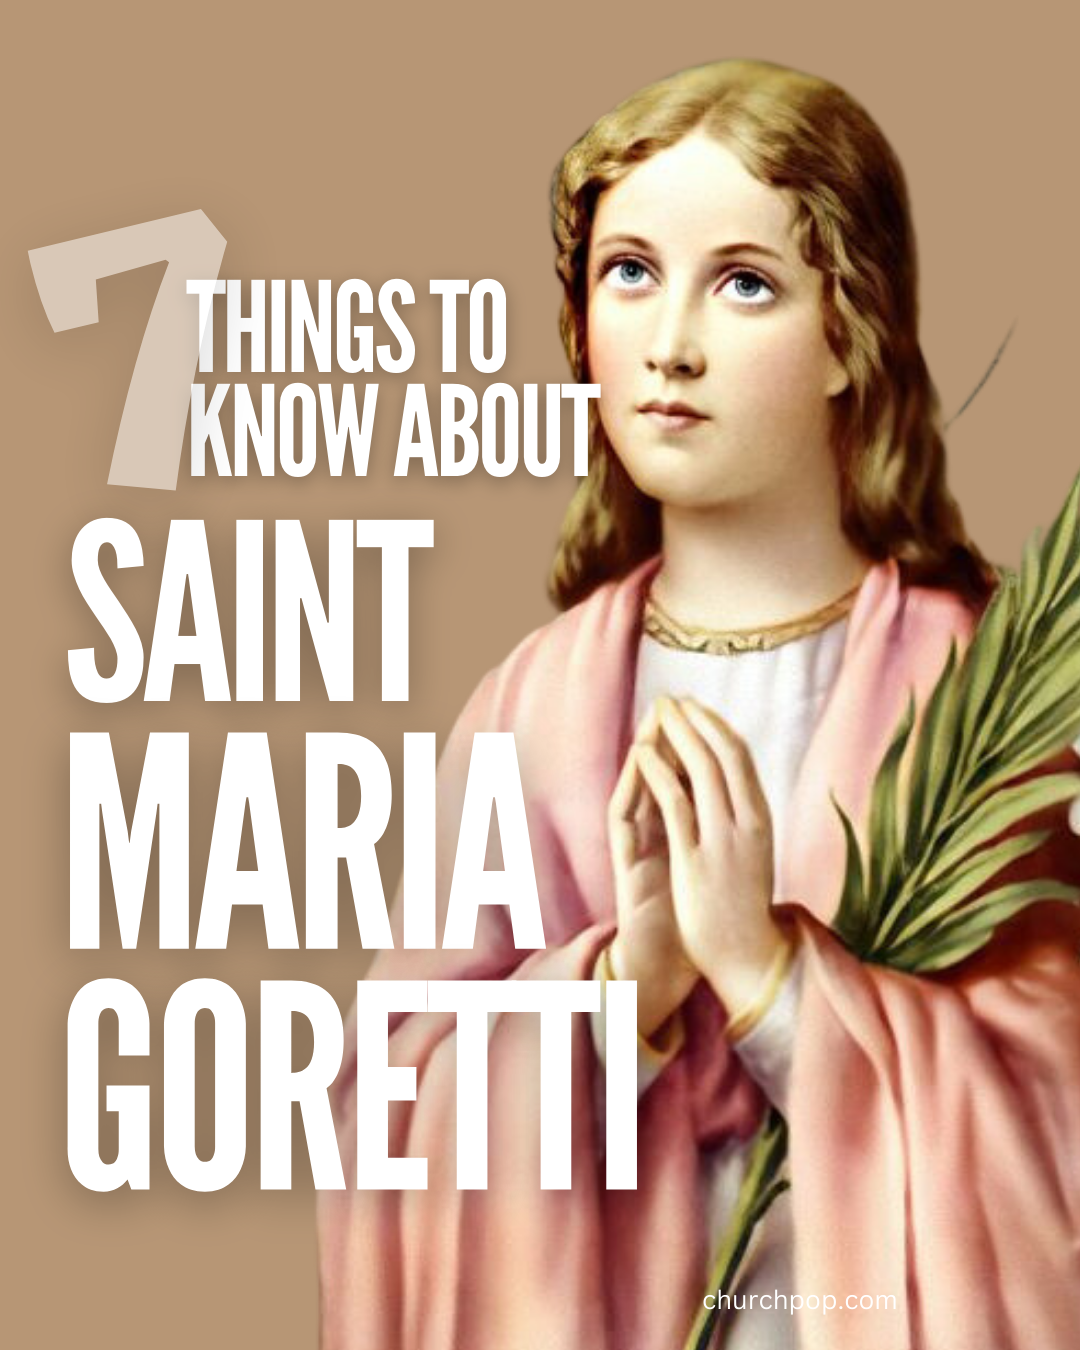 Why did Maria Goretti become a saint?